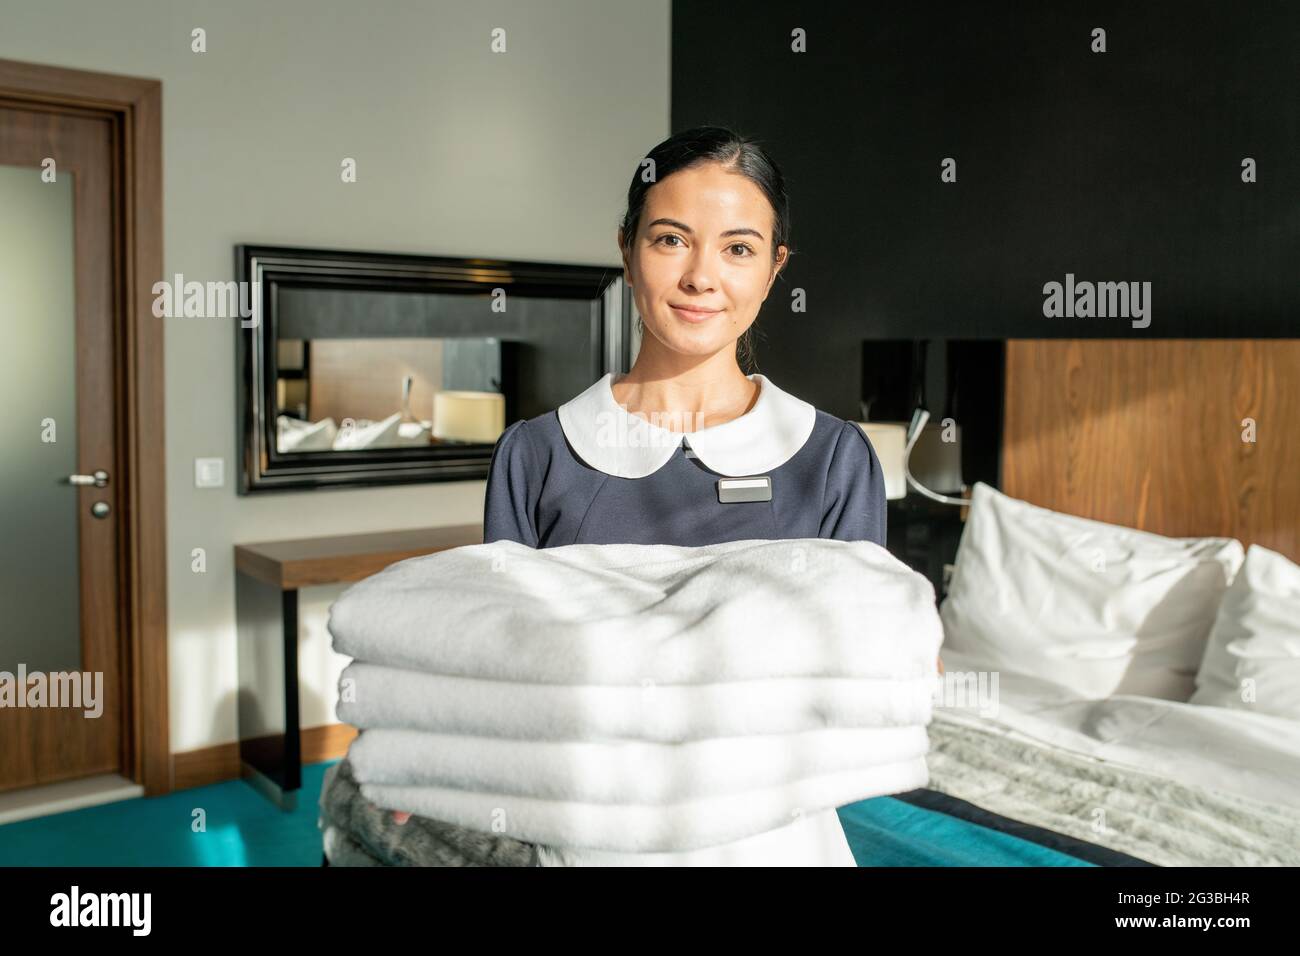 Das Personal des Zimmerservice war fröhlich und hielt einen Stapel weißer, sauberer Laken im Schlafzimmer Stockfoto